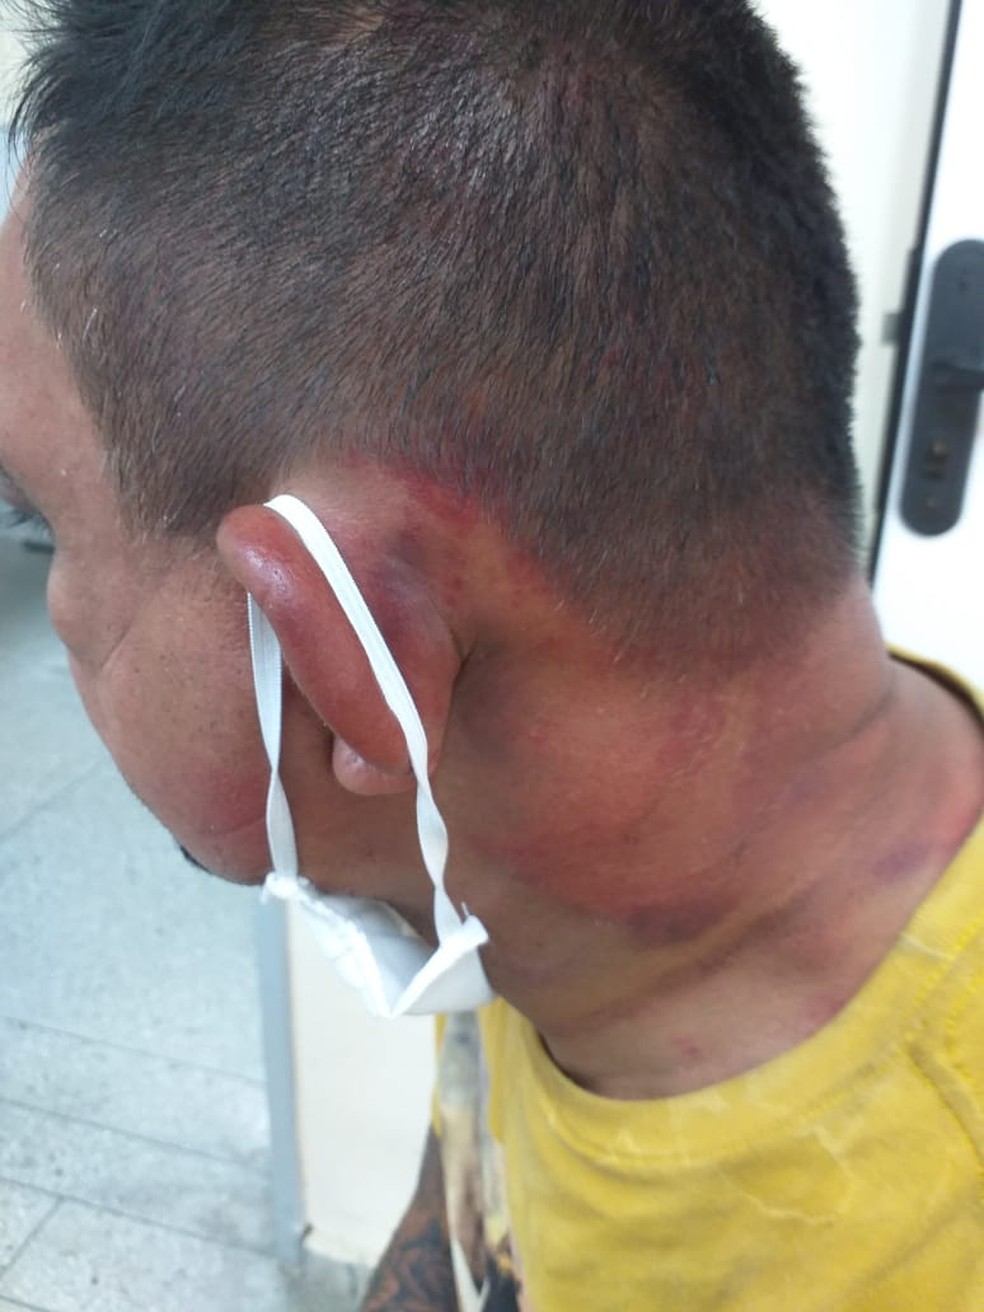 Aquicultor cearense foi libertado após ser torturado na Grande Natal — Foto: Divulgação/Polícia Civil